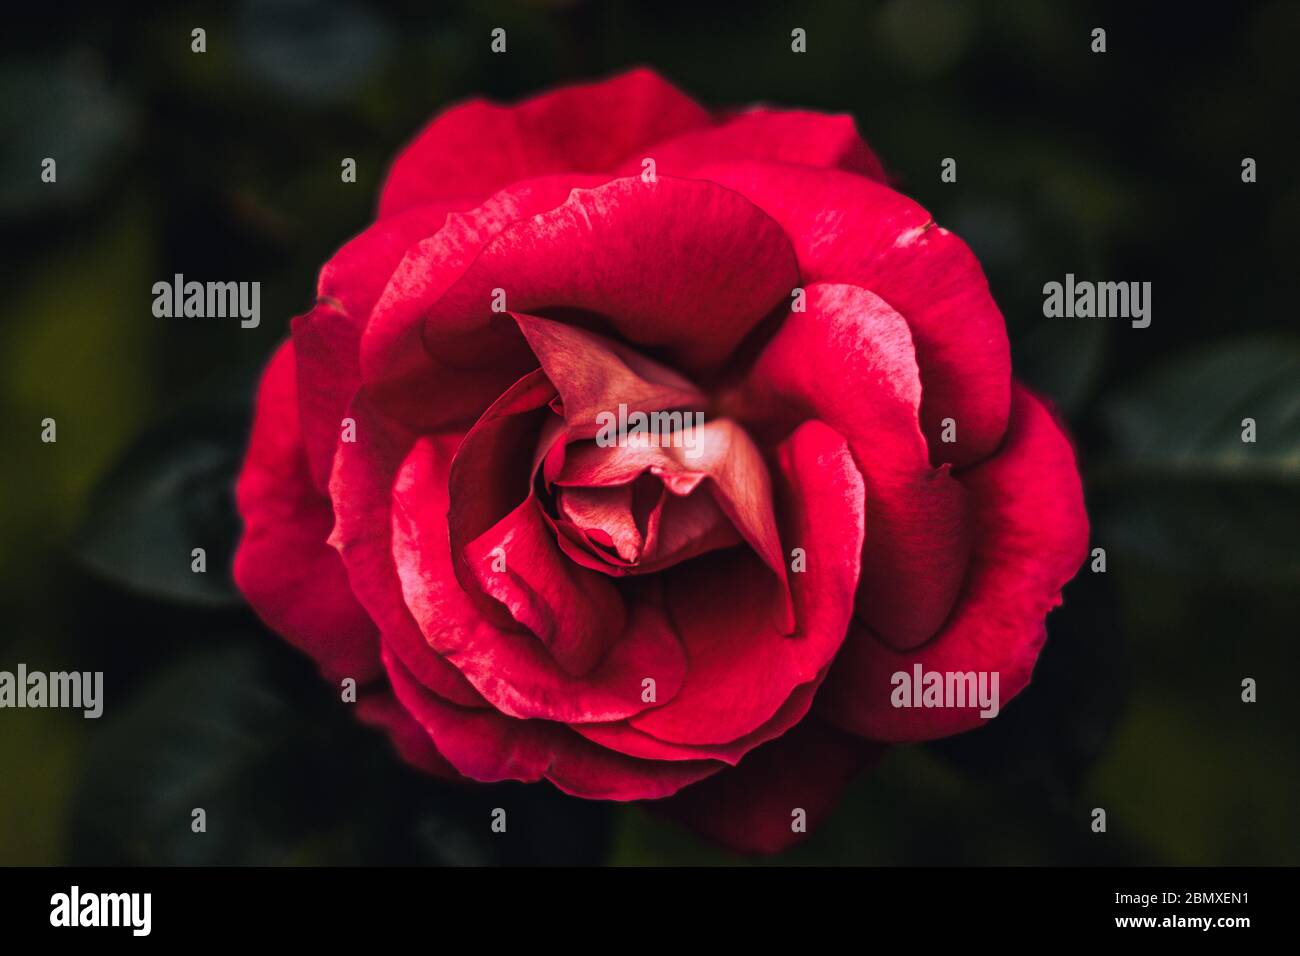 Einzelne Rose im Garten mit dunklem Hintergrund und Passionsrosa mit intensiver Farbe. Draufsicht mit Rose in der Mitte. Konzept Anziehung, Kraft, Stockfoto